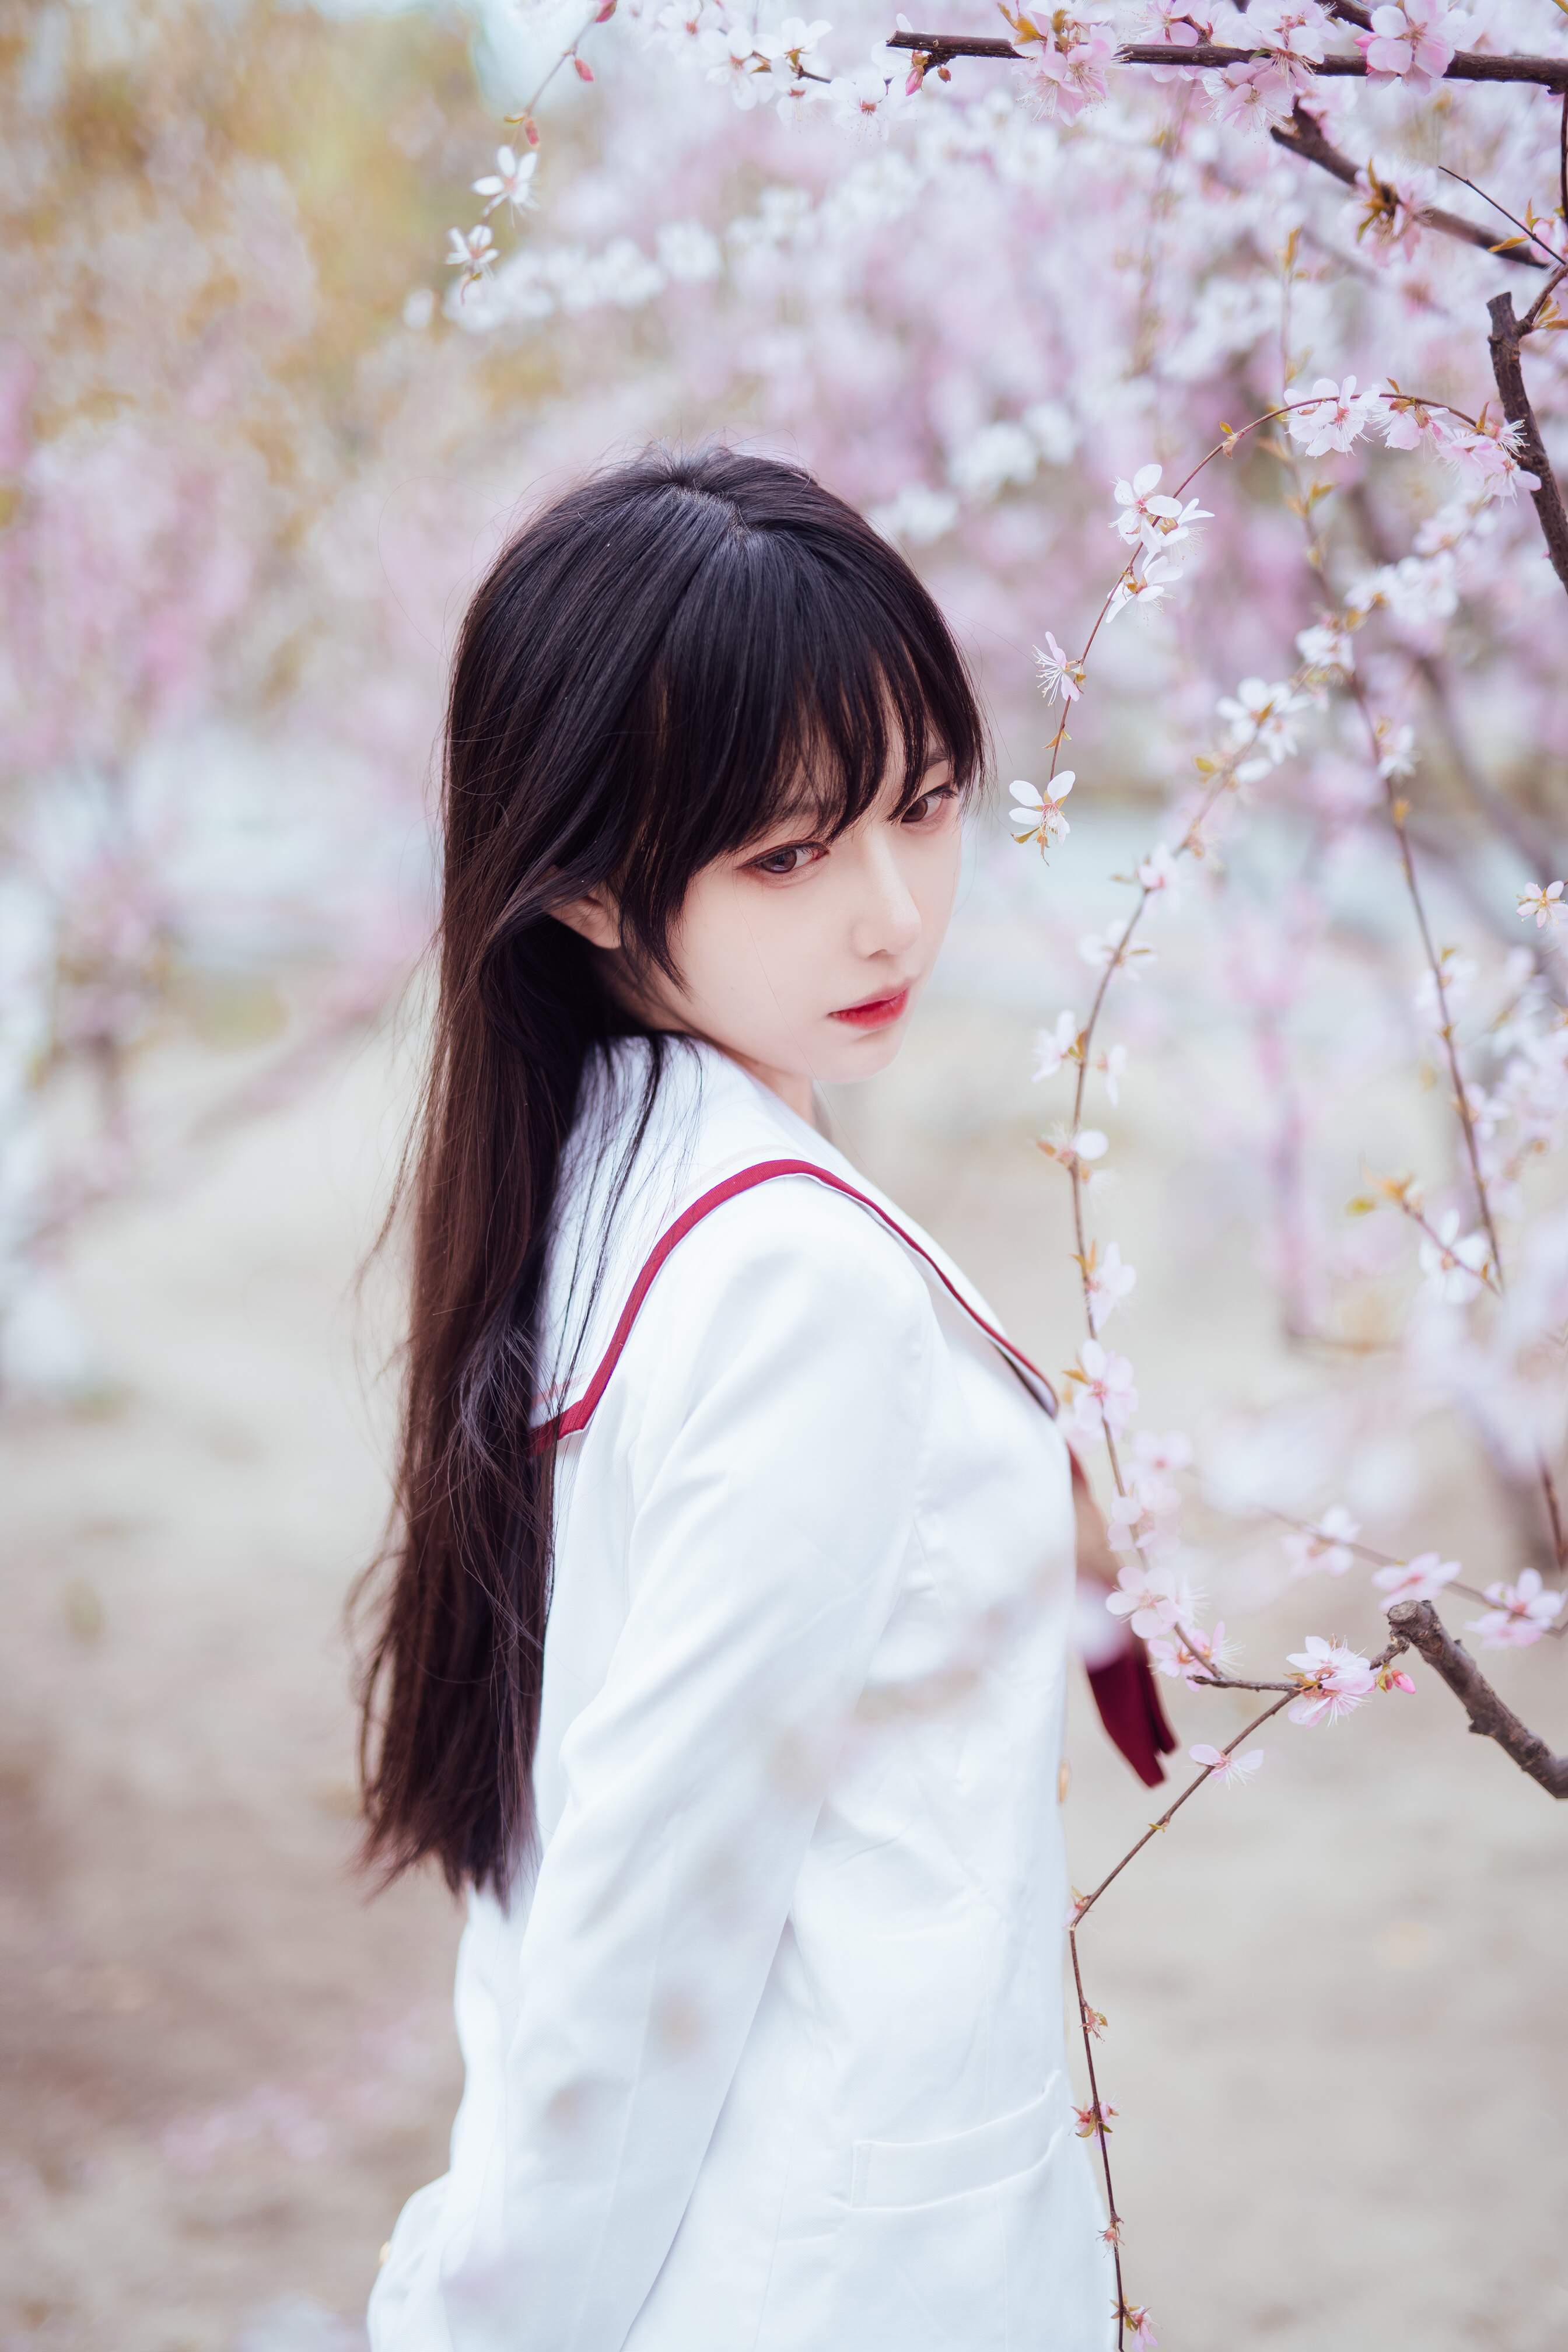 People 2688x4032 cherry blossom Asian women model looking away women outdoors red lipstick long hair Shika XiaoLu